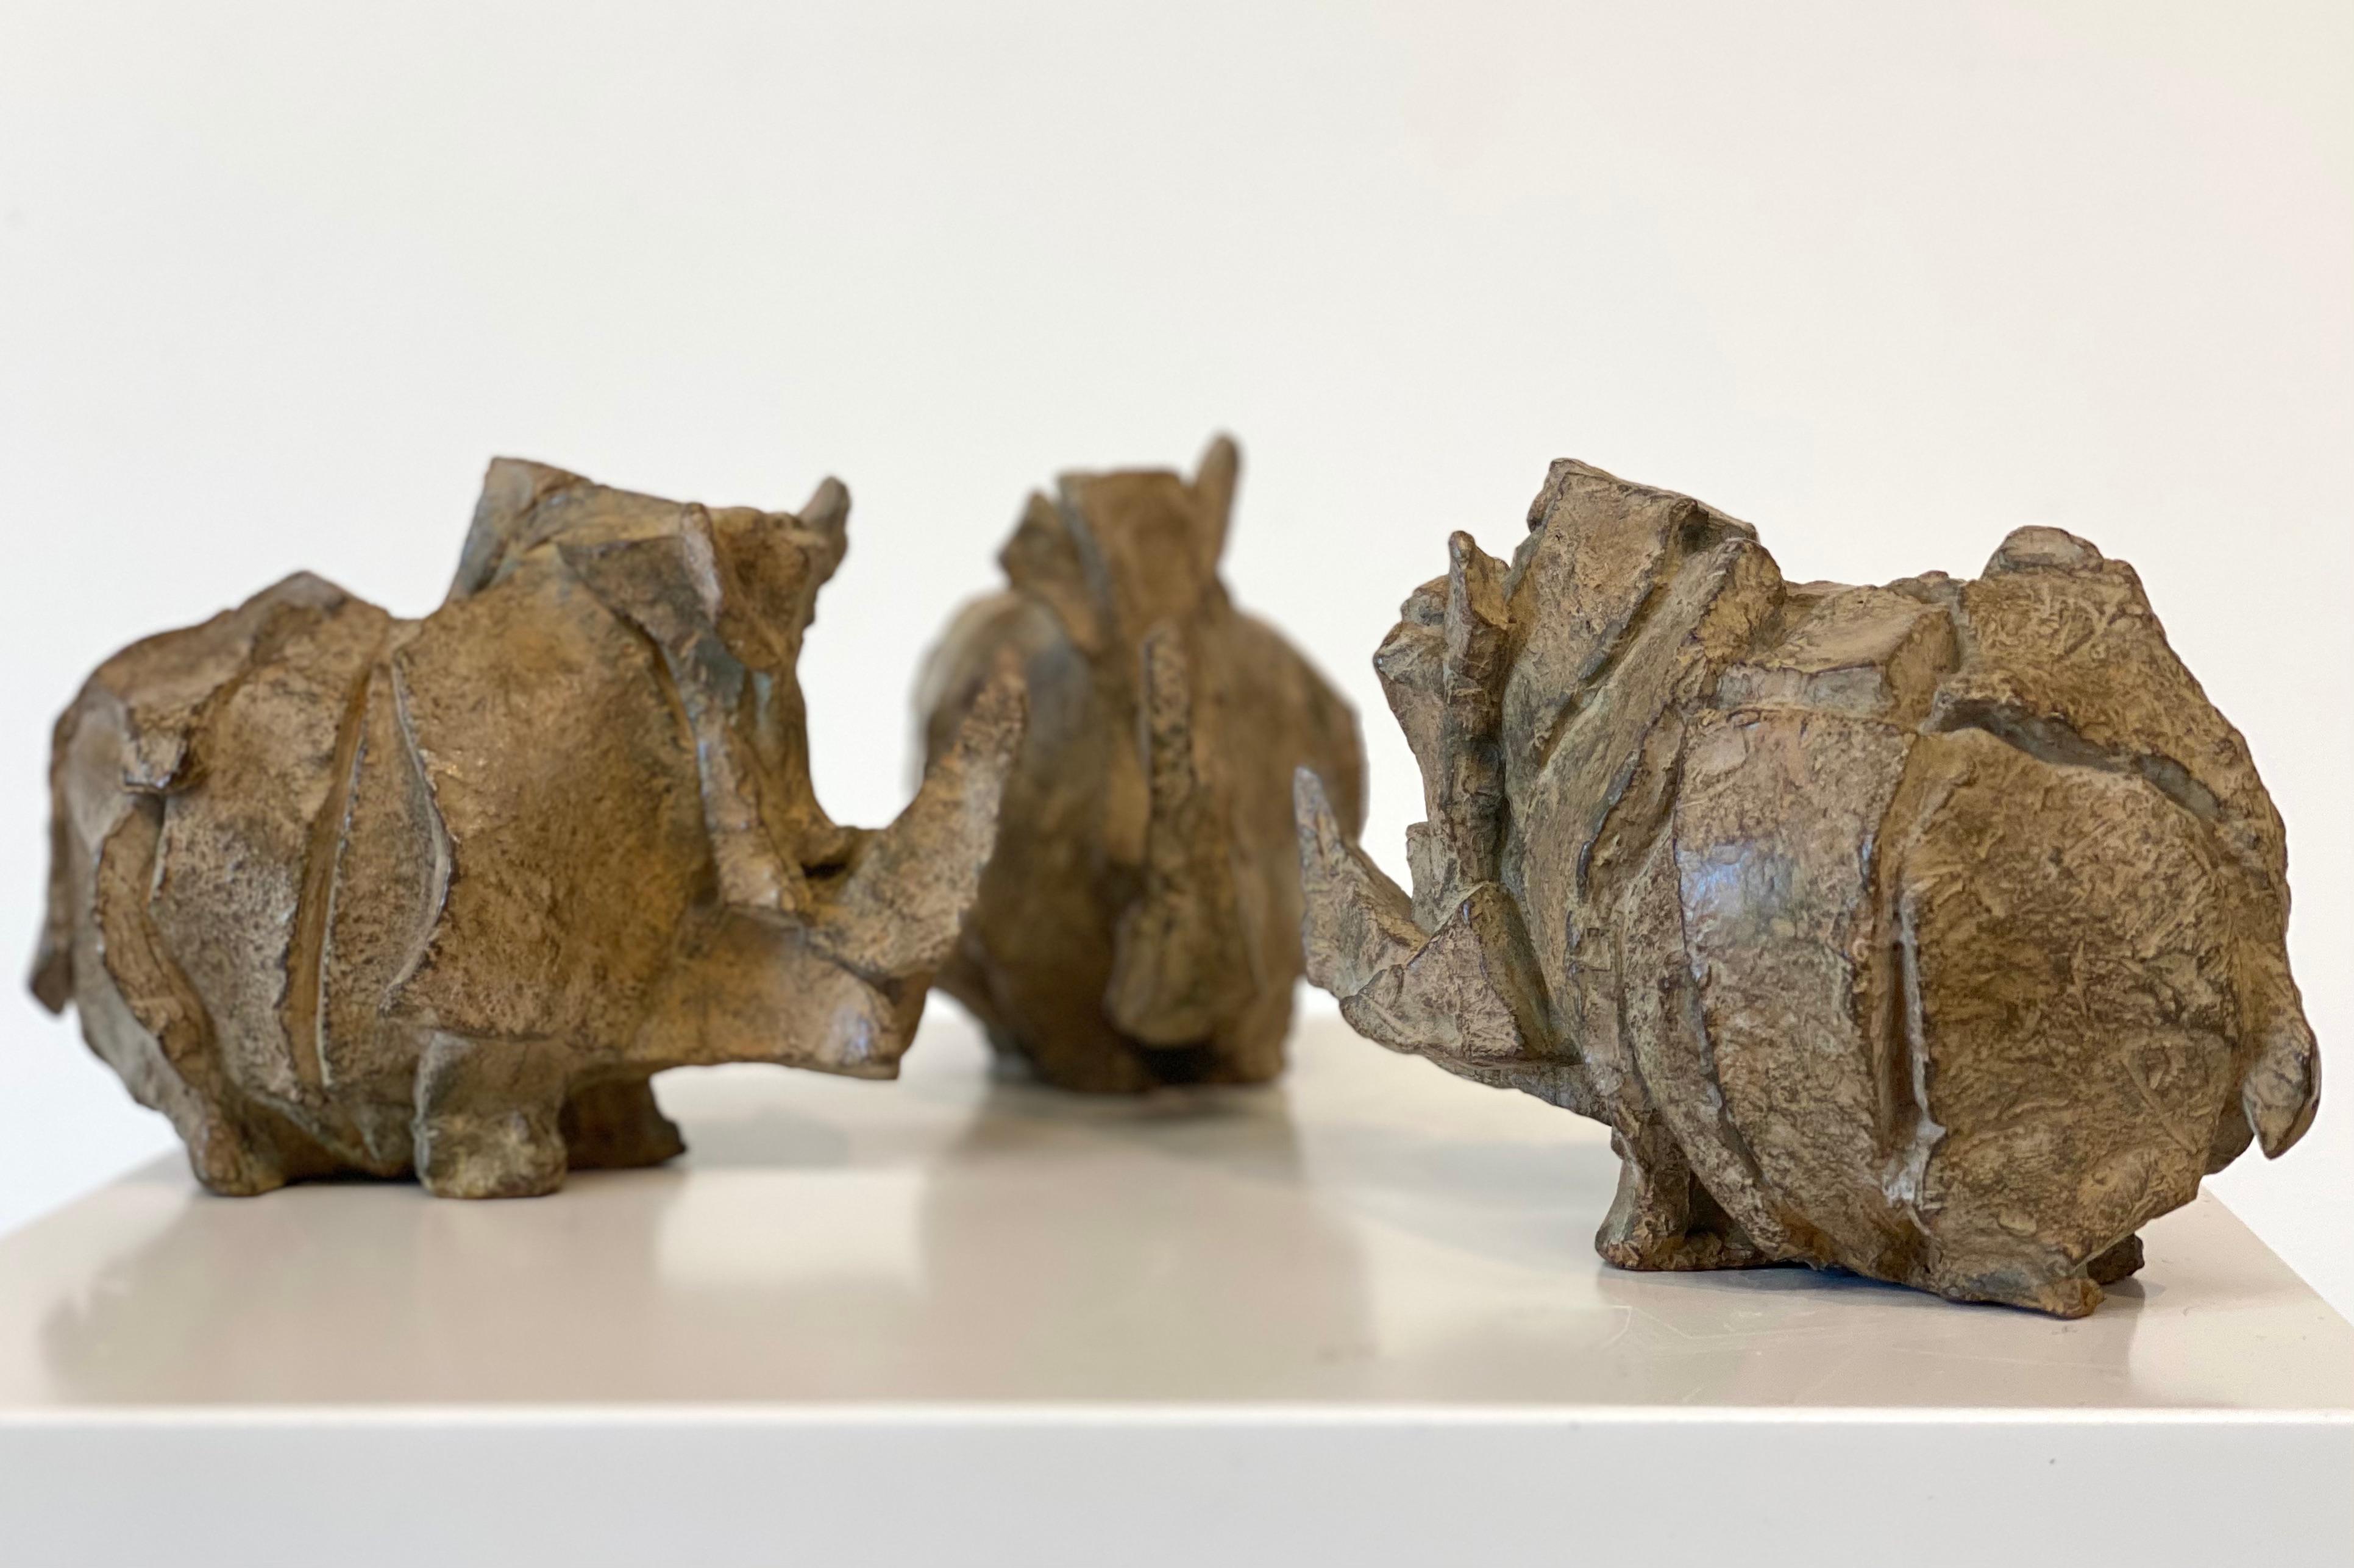 Diese drei Skulpturen stammen von der niederländischen Künstlerin Antoinette Briet. Ihre Formen sind immer eine Abstraktion der Bewegung oder des Stillstands in der Welt der Tiere. In diesen besonderen Skulpturen zeigt sie ihre Bewunderung für die